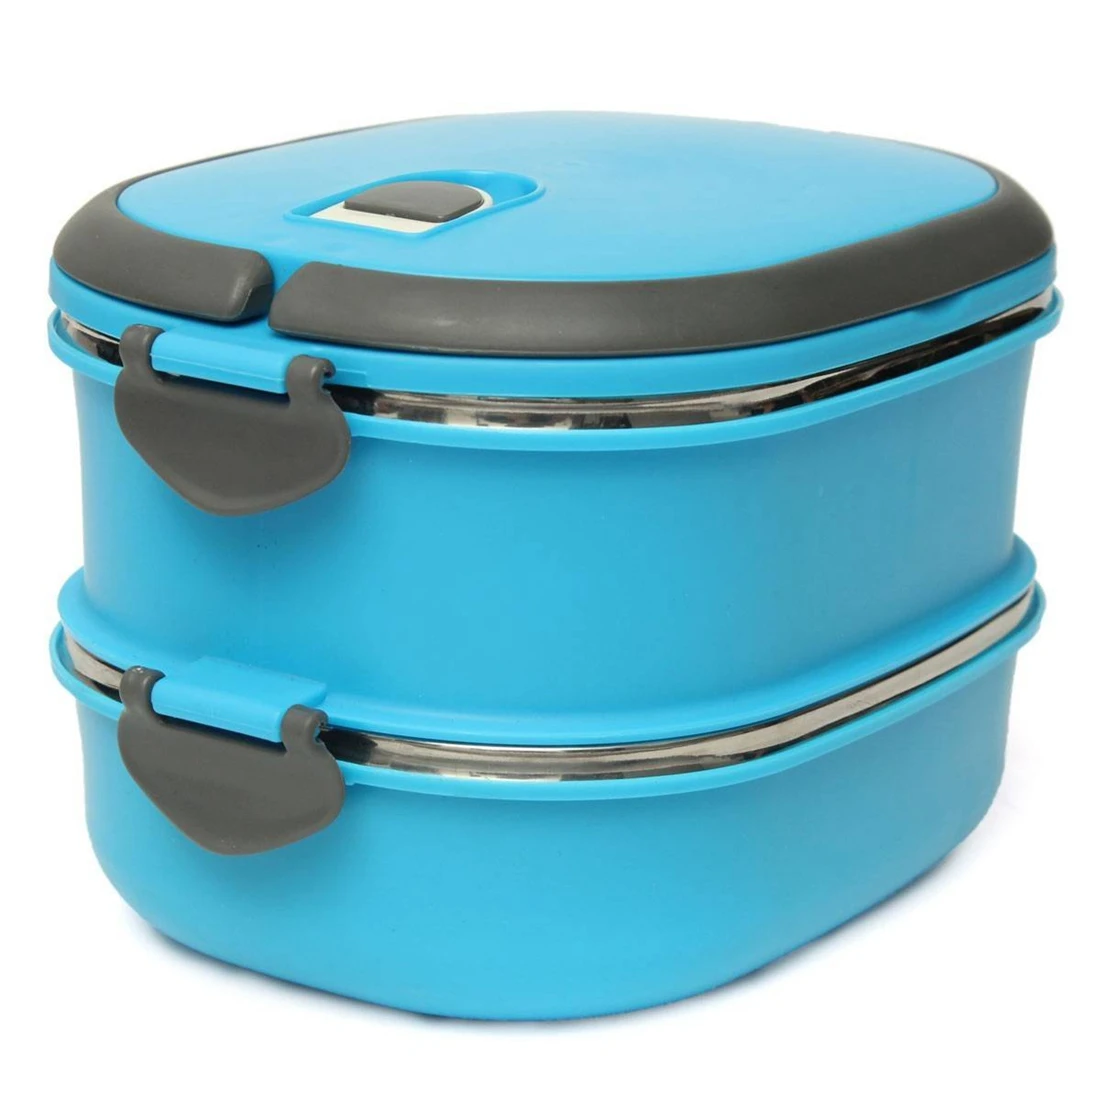 Горячая-компактная коробка для еды из нержавеющей стали два слоя Warmbox Bento box для пикника коробка для закусок доза чая контейнер для хранения продуктов - Цвет: Blue